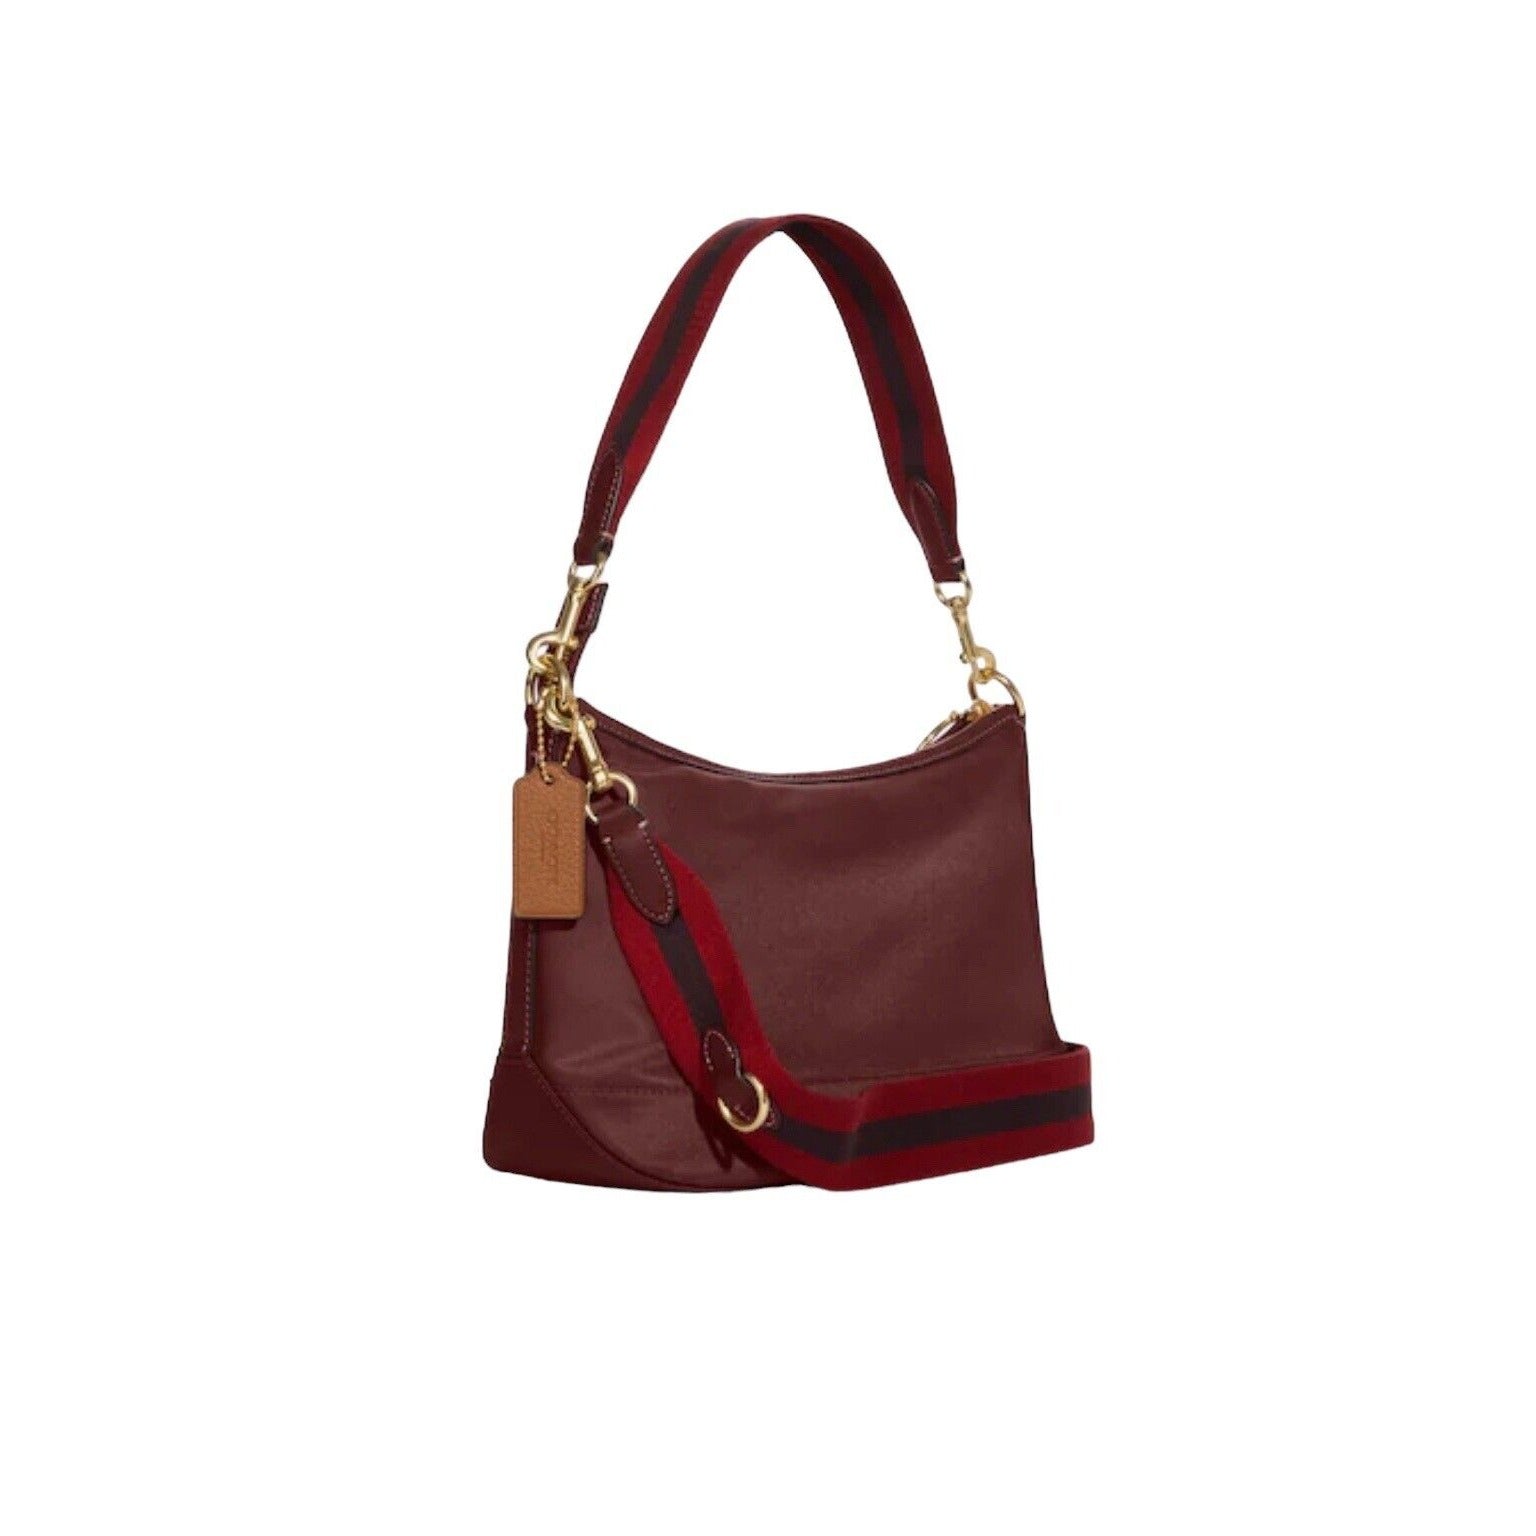 Burgundy Shoulder Bag With Shoulder Detachable Strap And Detachable Handle